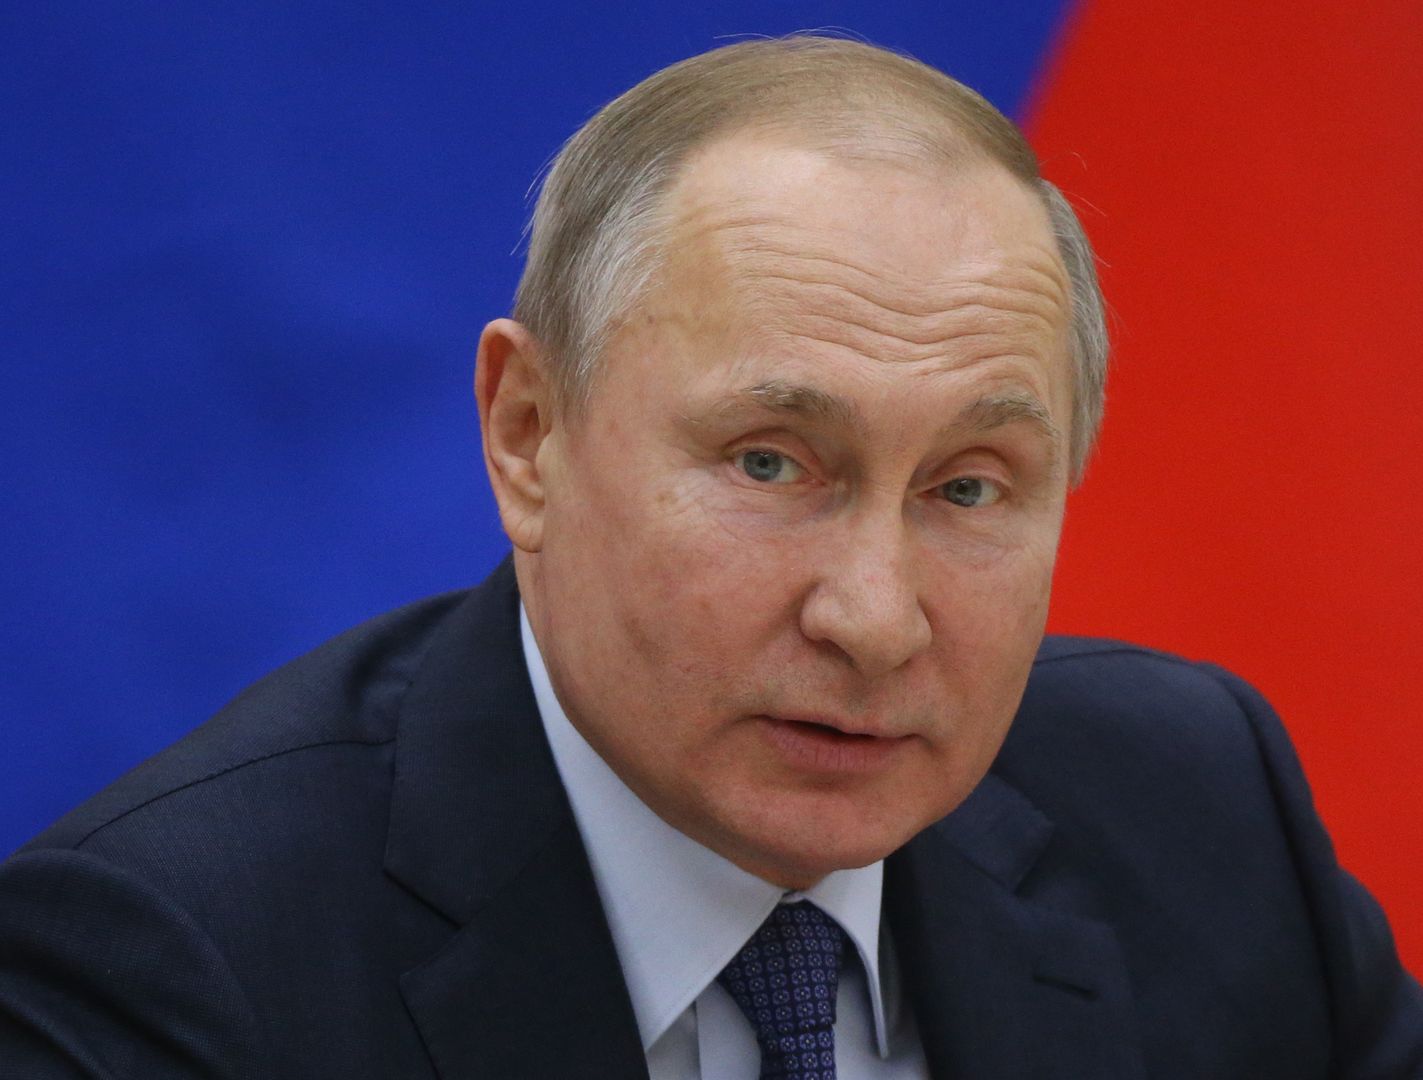 Prezydent Rosji przerwał milczenie. Putin komentuje zamieszki w USA